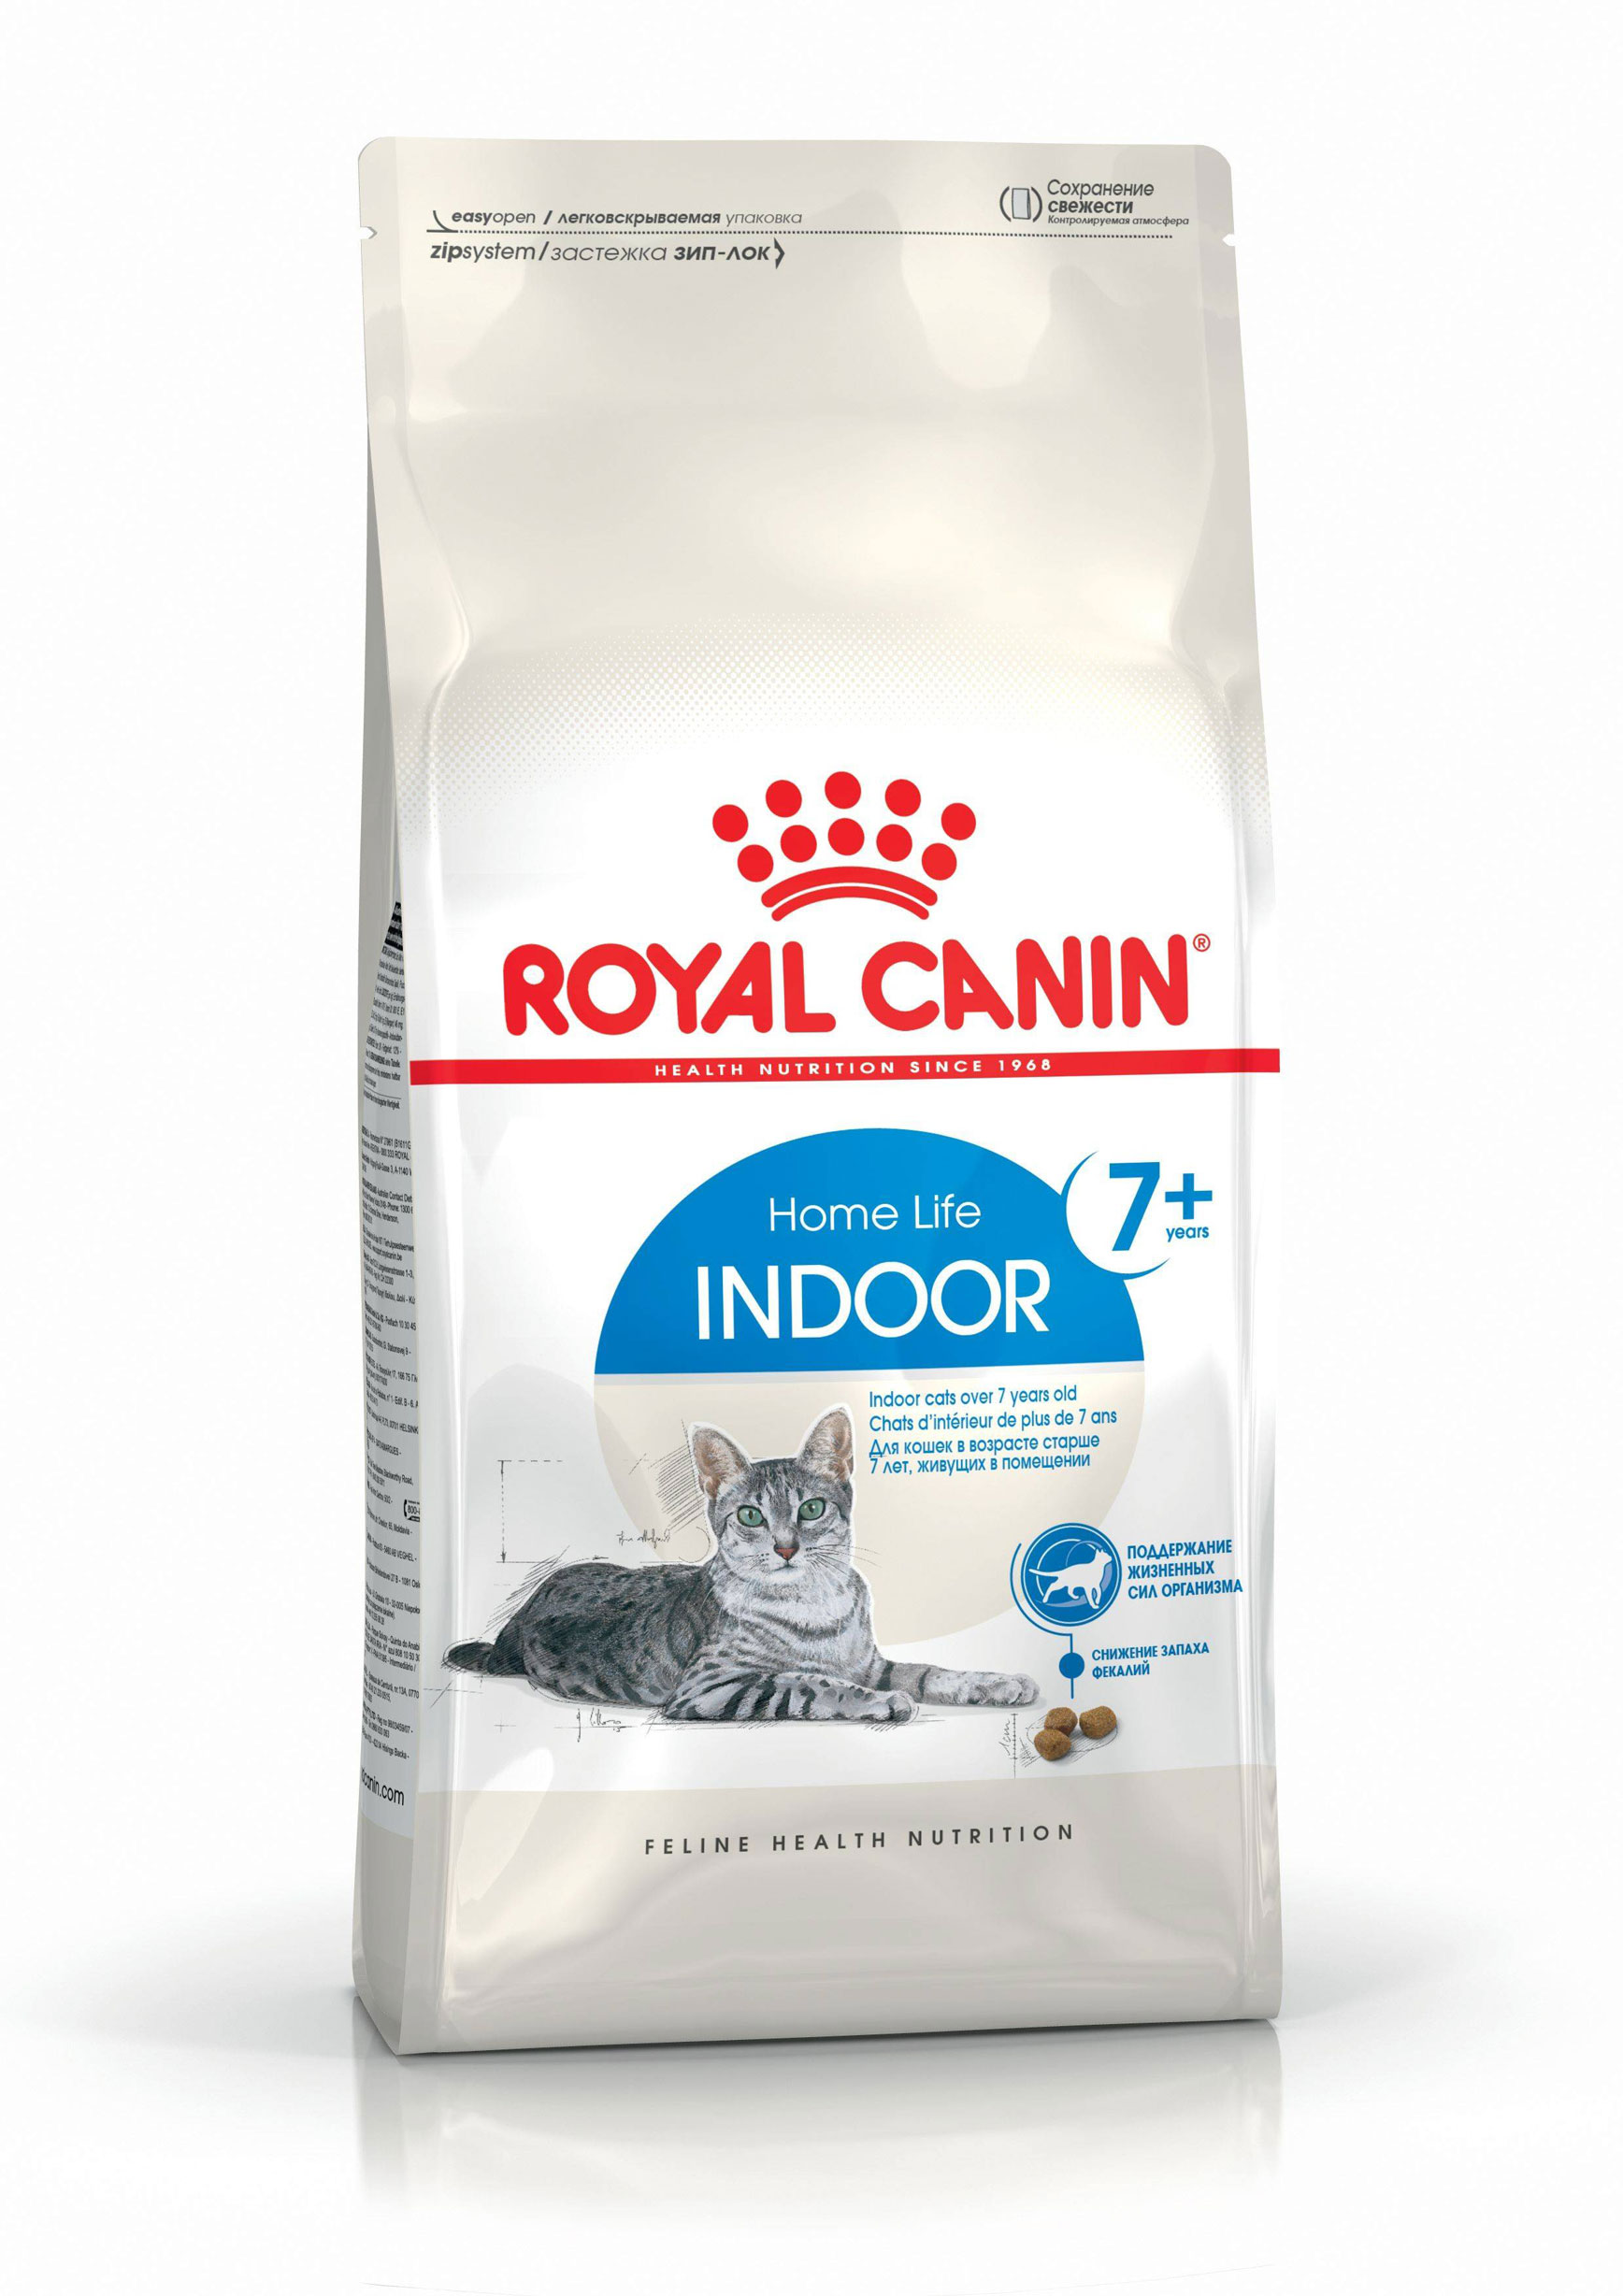 ROYAL CANIN INDOOR 7+ – сухой корм для домашних кошек старше 7 лет